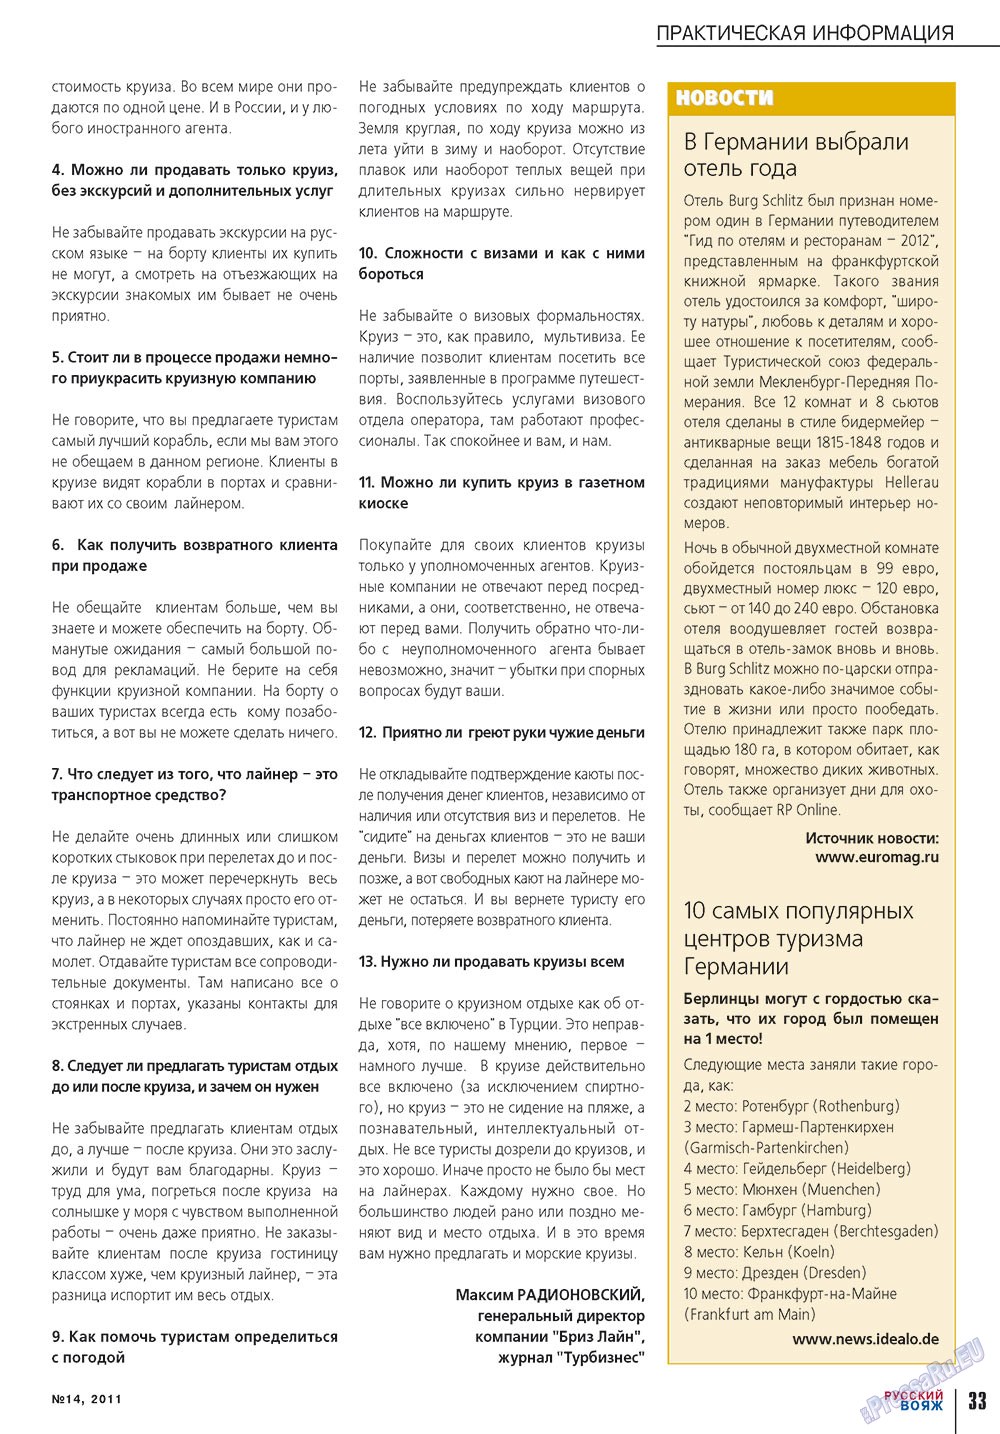 Русский вояж (журнал). 2011 год, номер 14, стр. 33